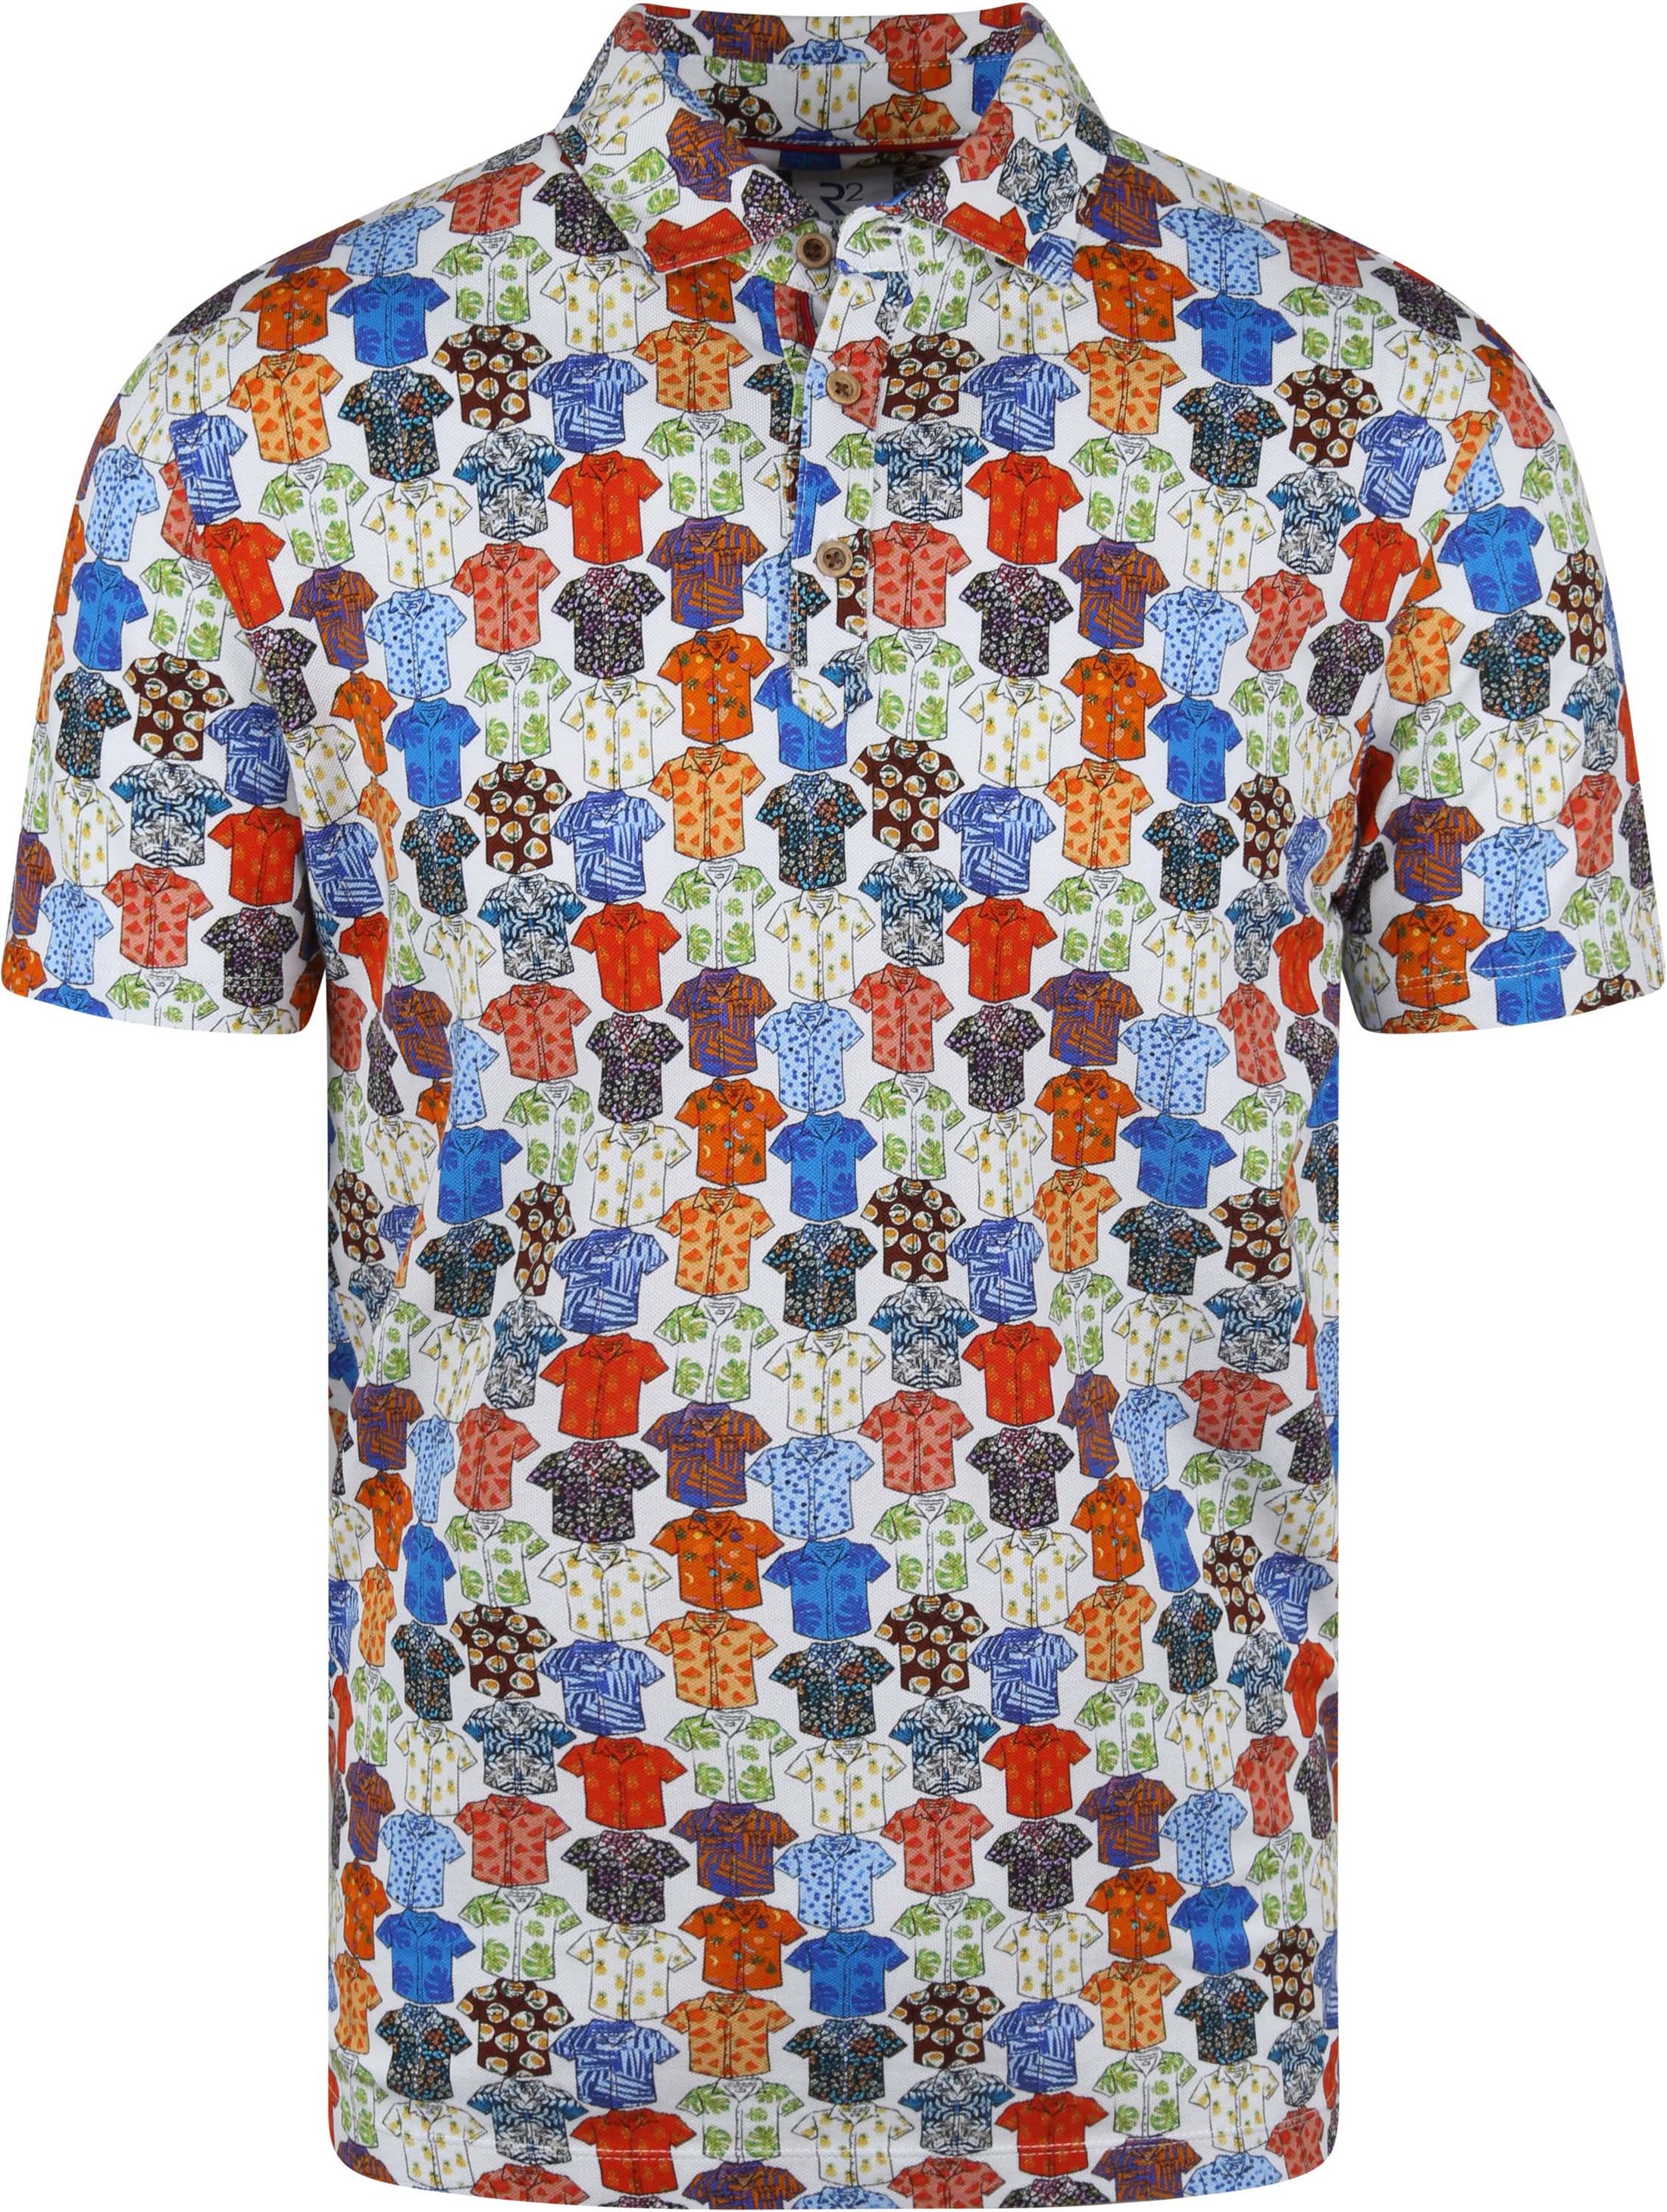 R2 Amsterdam - R2 polo shirt multicoloured shirtprint multicolour size l